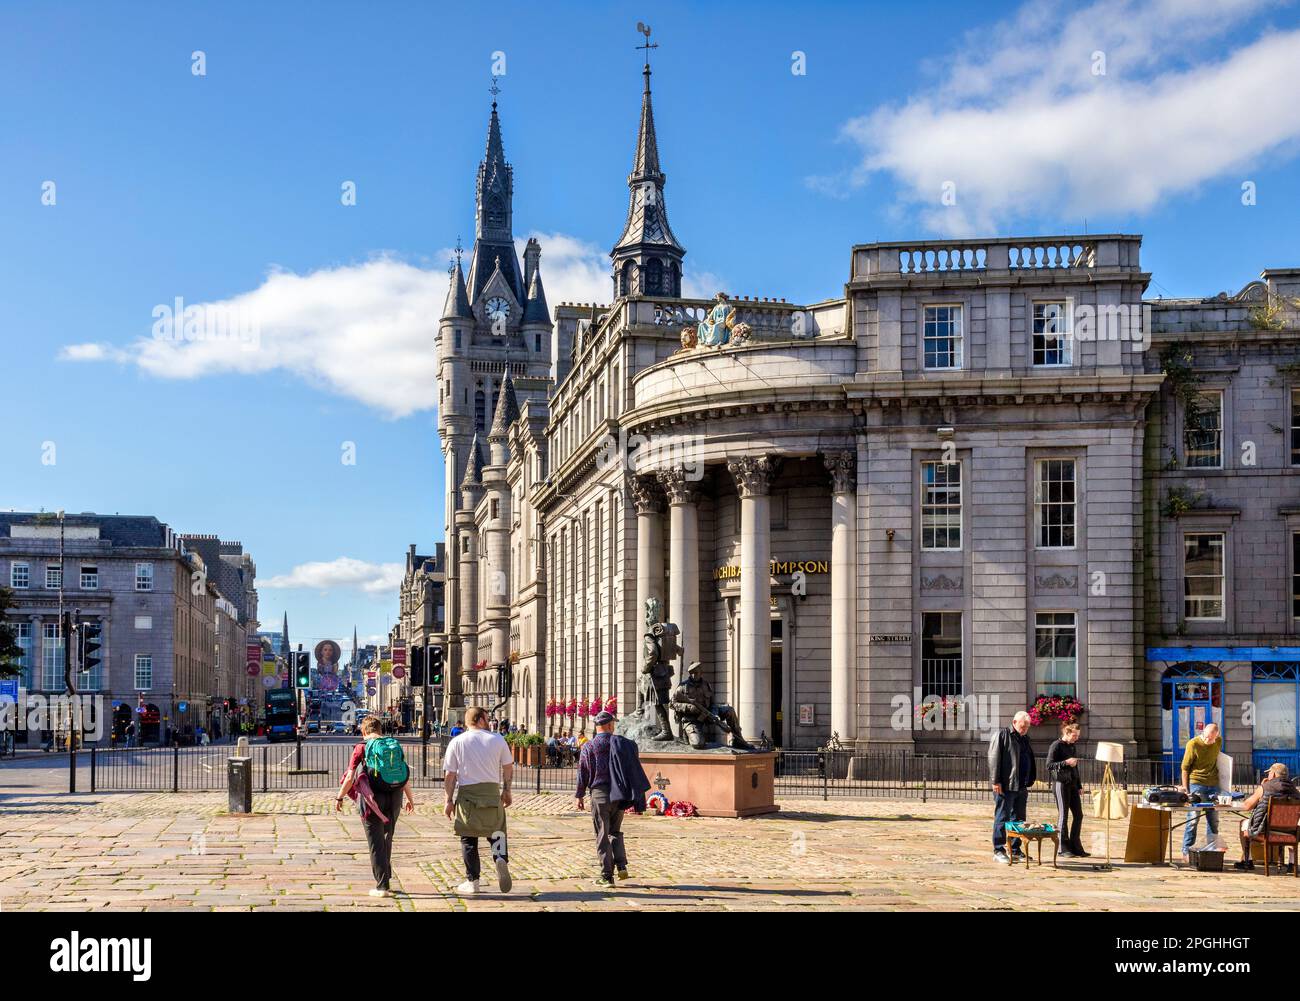 13 septembre 2022 : Aberdeen, Écosse, Royaume-Uni - vue de la place du marché vers le Mémorial Gordon Highlanders, la maison publique Archibald Simpson et t Banque D'Images